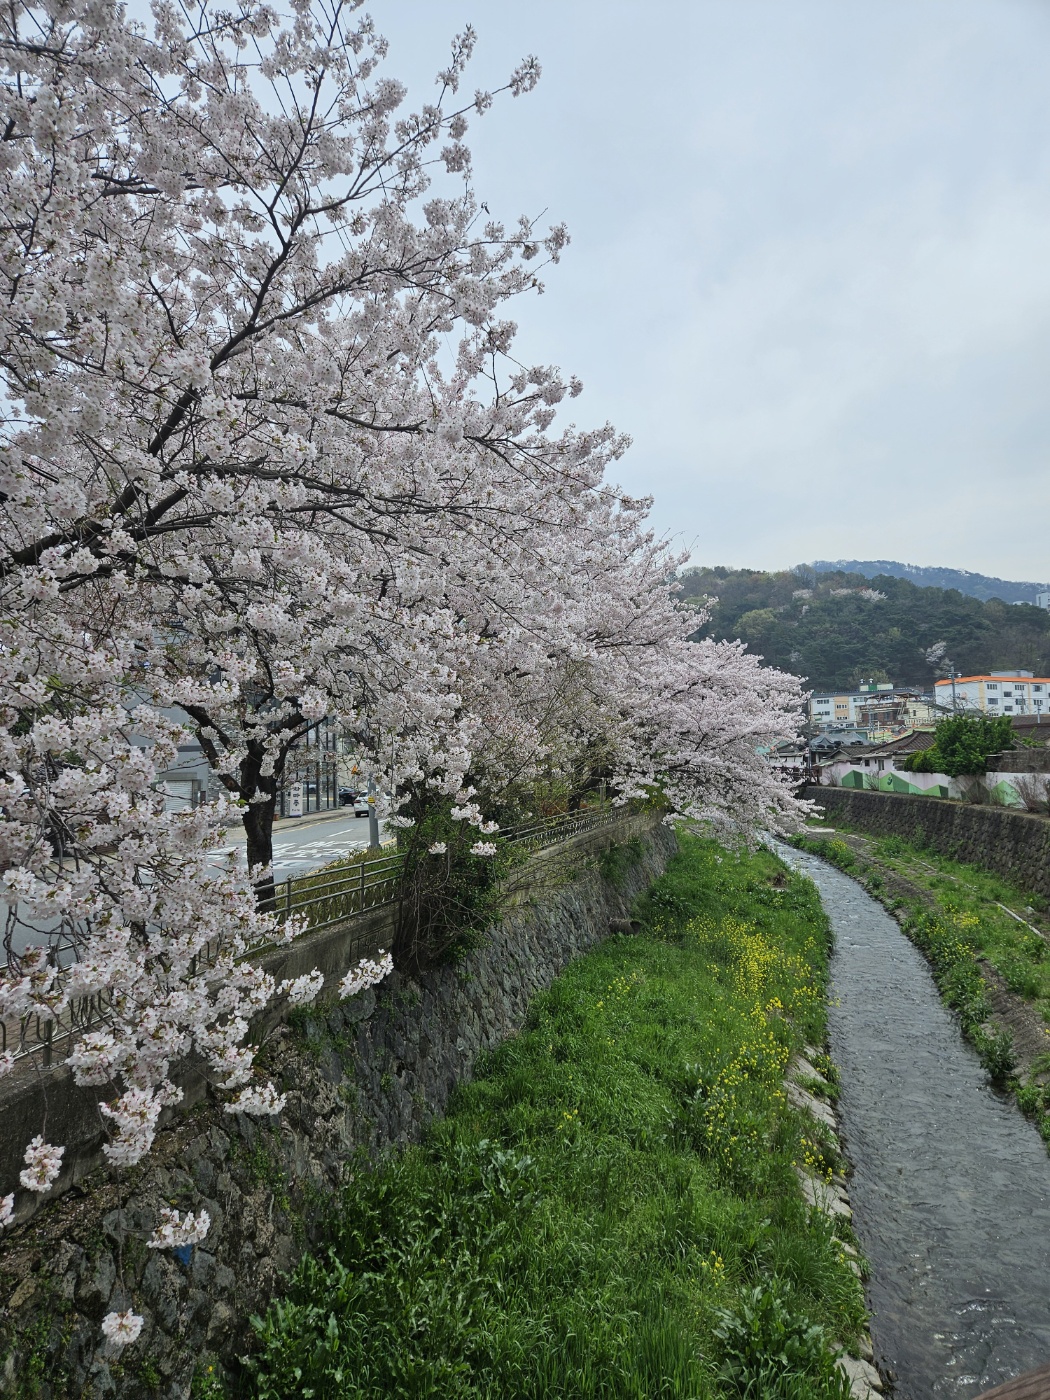 봄바람 휘날리며 벚꽃눈을 느껴요 첨부이미지 : 1712369939486.jpg 